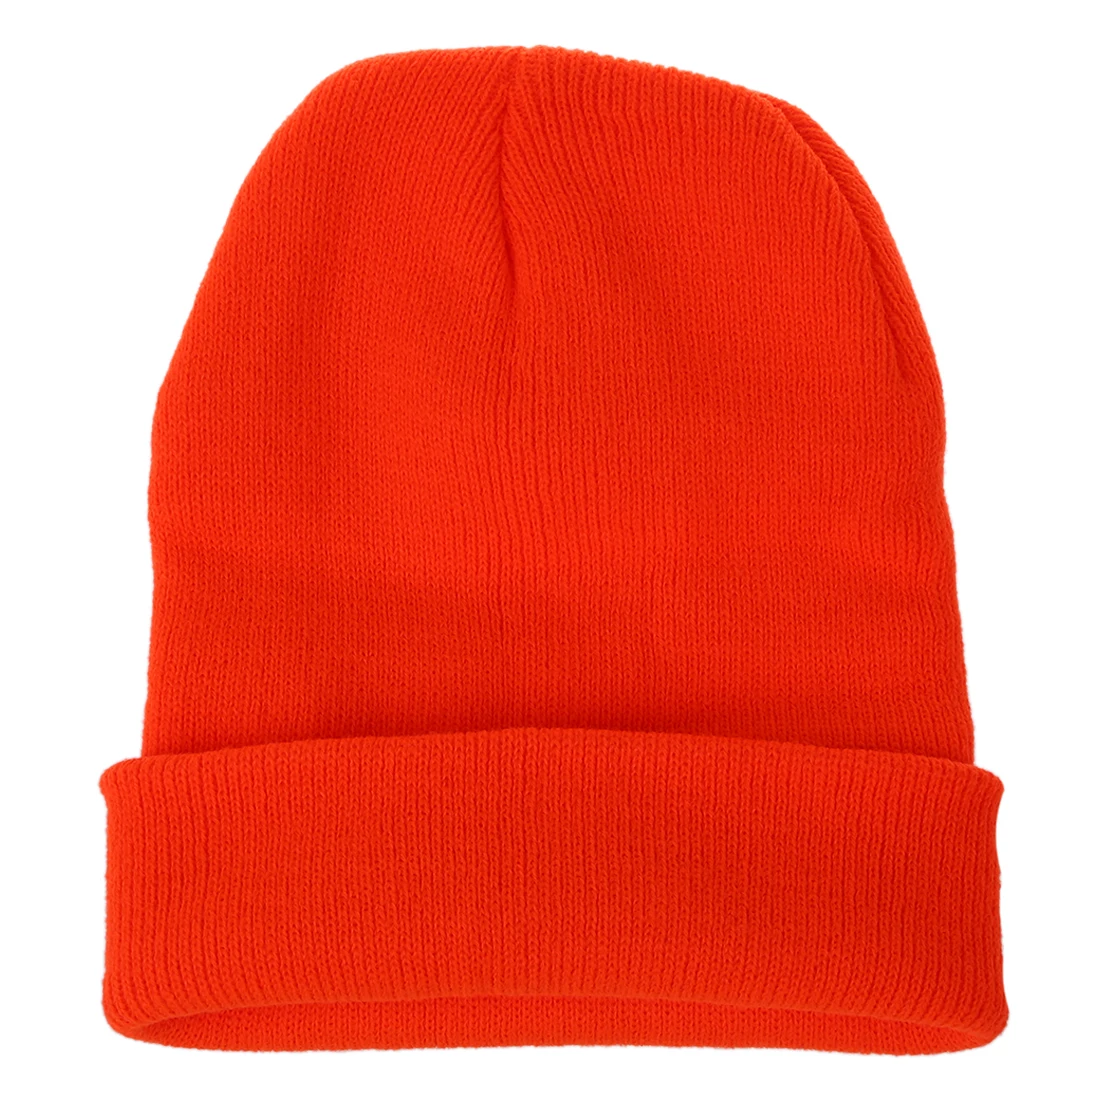 Зимняя шапка вязаная Лыжная шапка теплая (яркая оранжево)